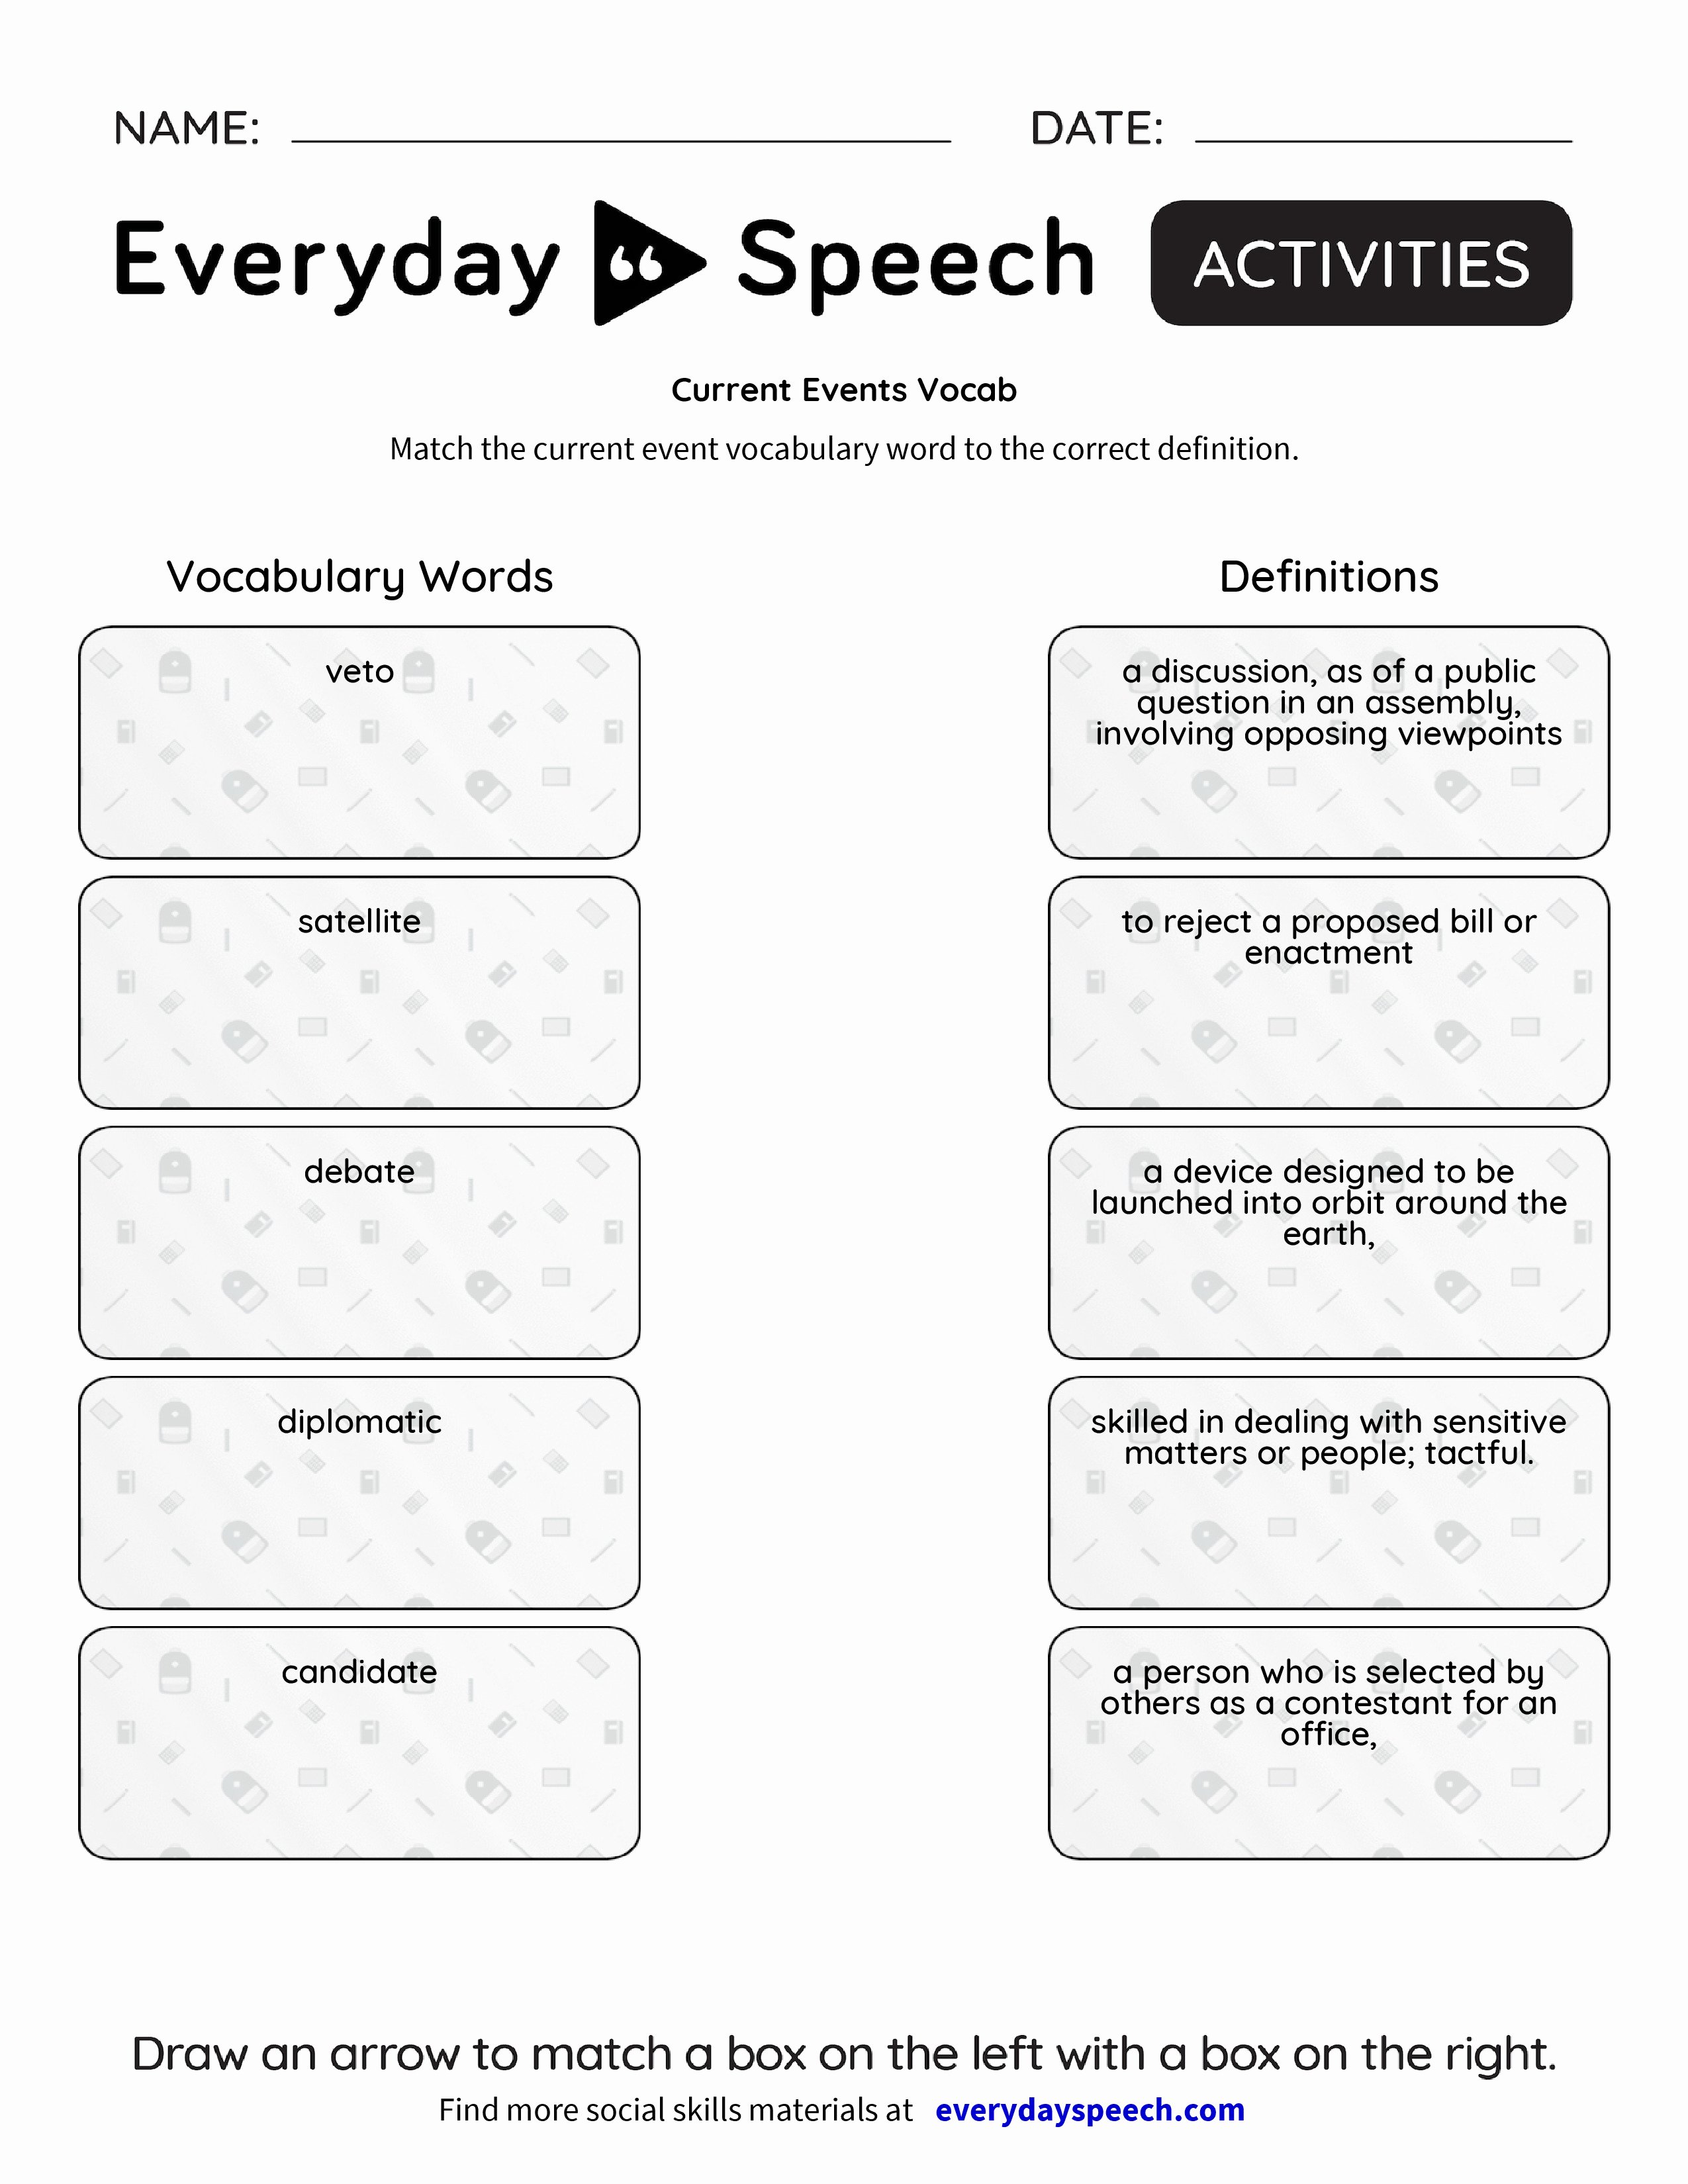 Current events Worksheet Pdf Inspirational Current events Vocab Everyday Speech Everyday Speech